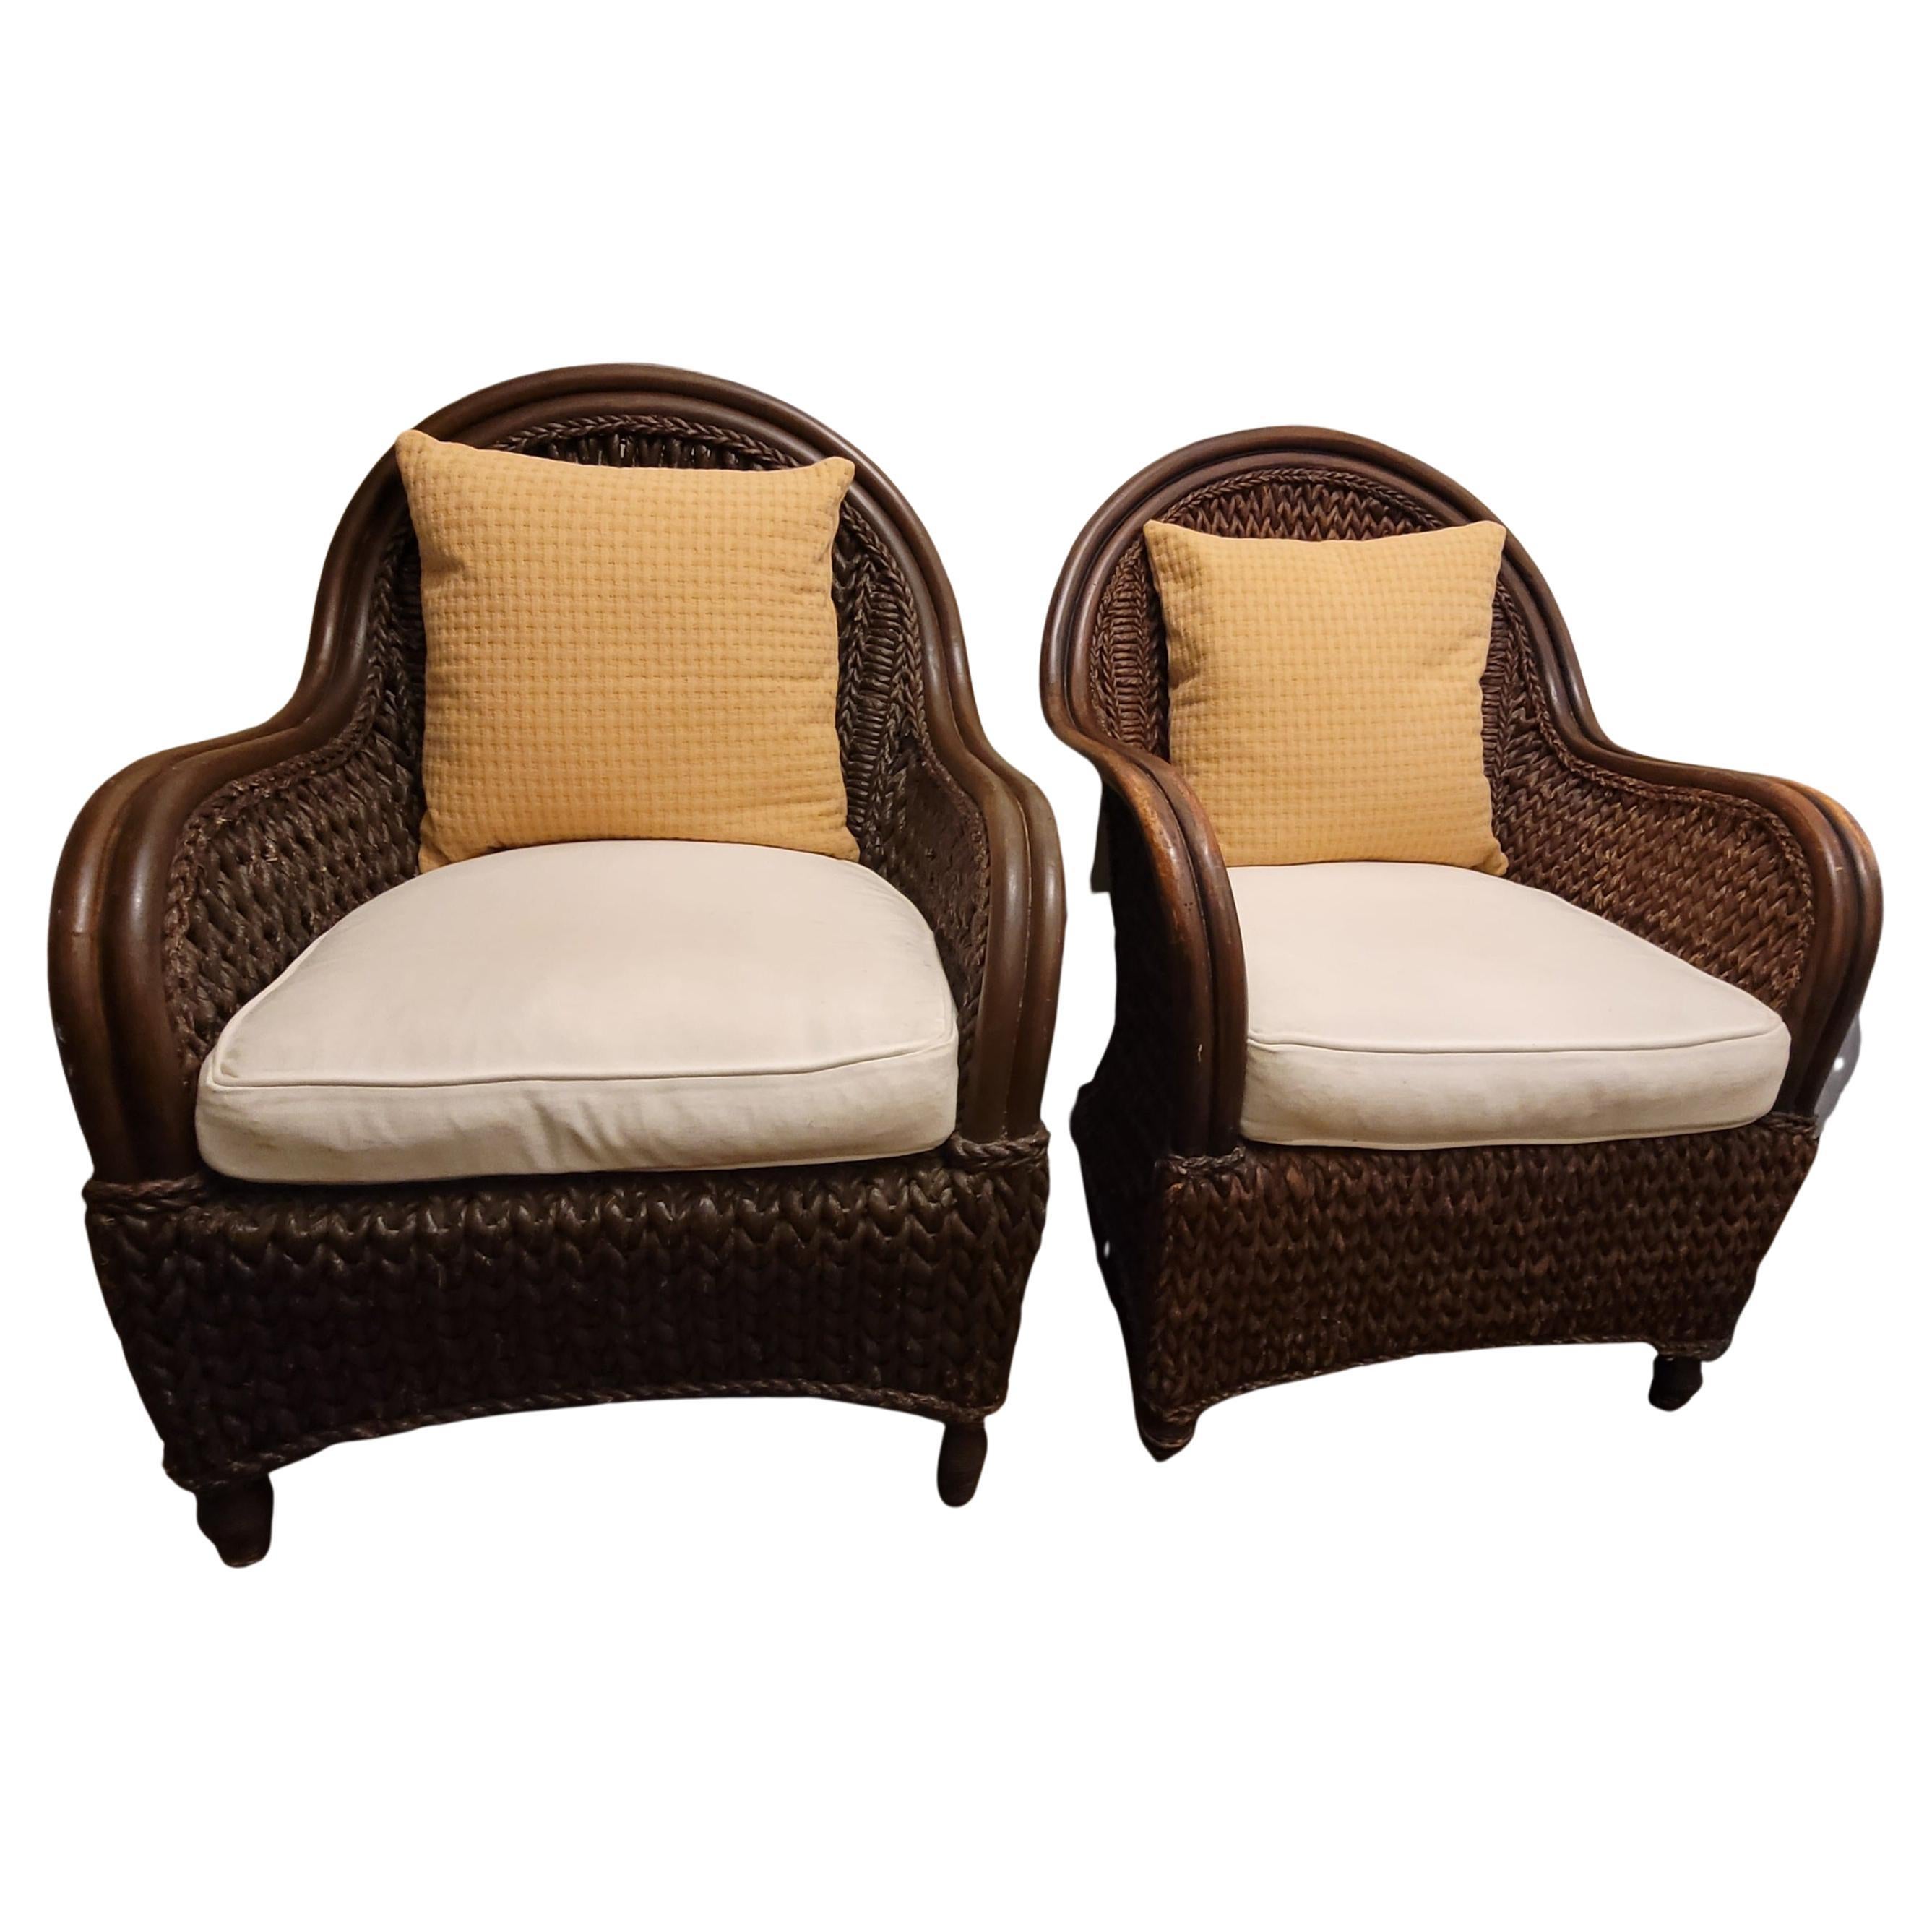 Vintage  chaises longues en rotin et en jonc avec ottoman et coussins en toile. La chaise mesure 30